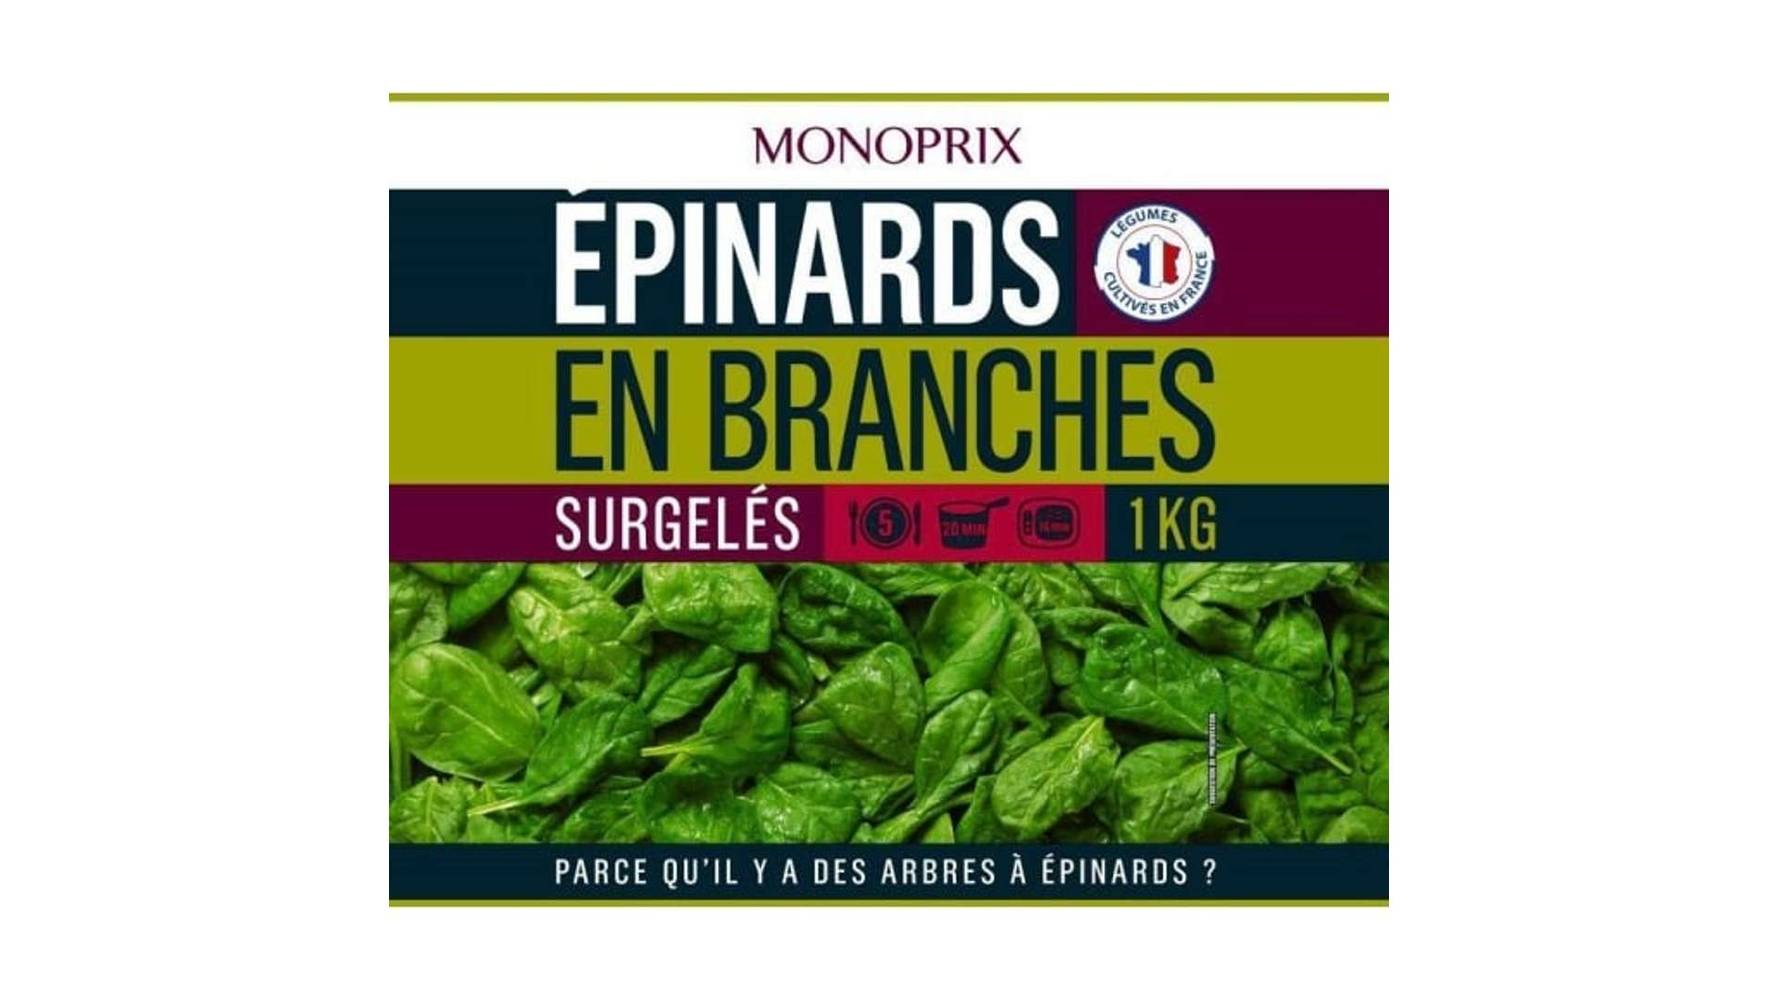 Monoprix Epinards en branches, surgelés Le sachet de 1kg